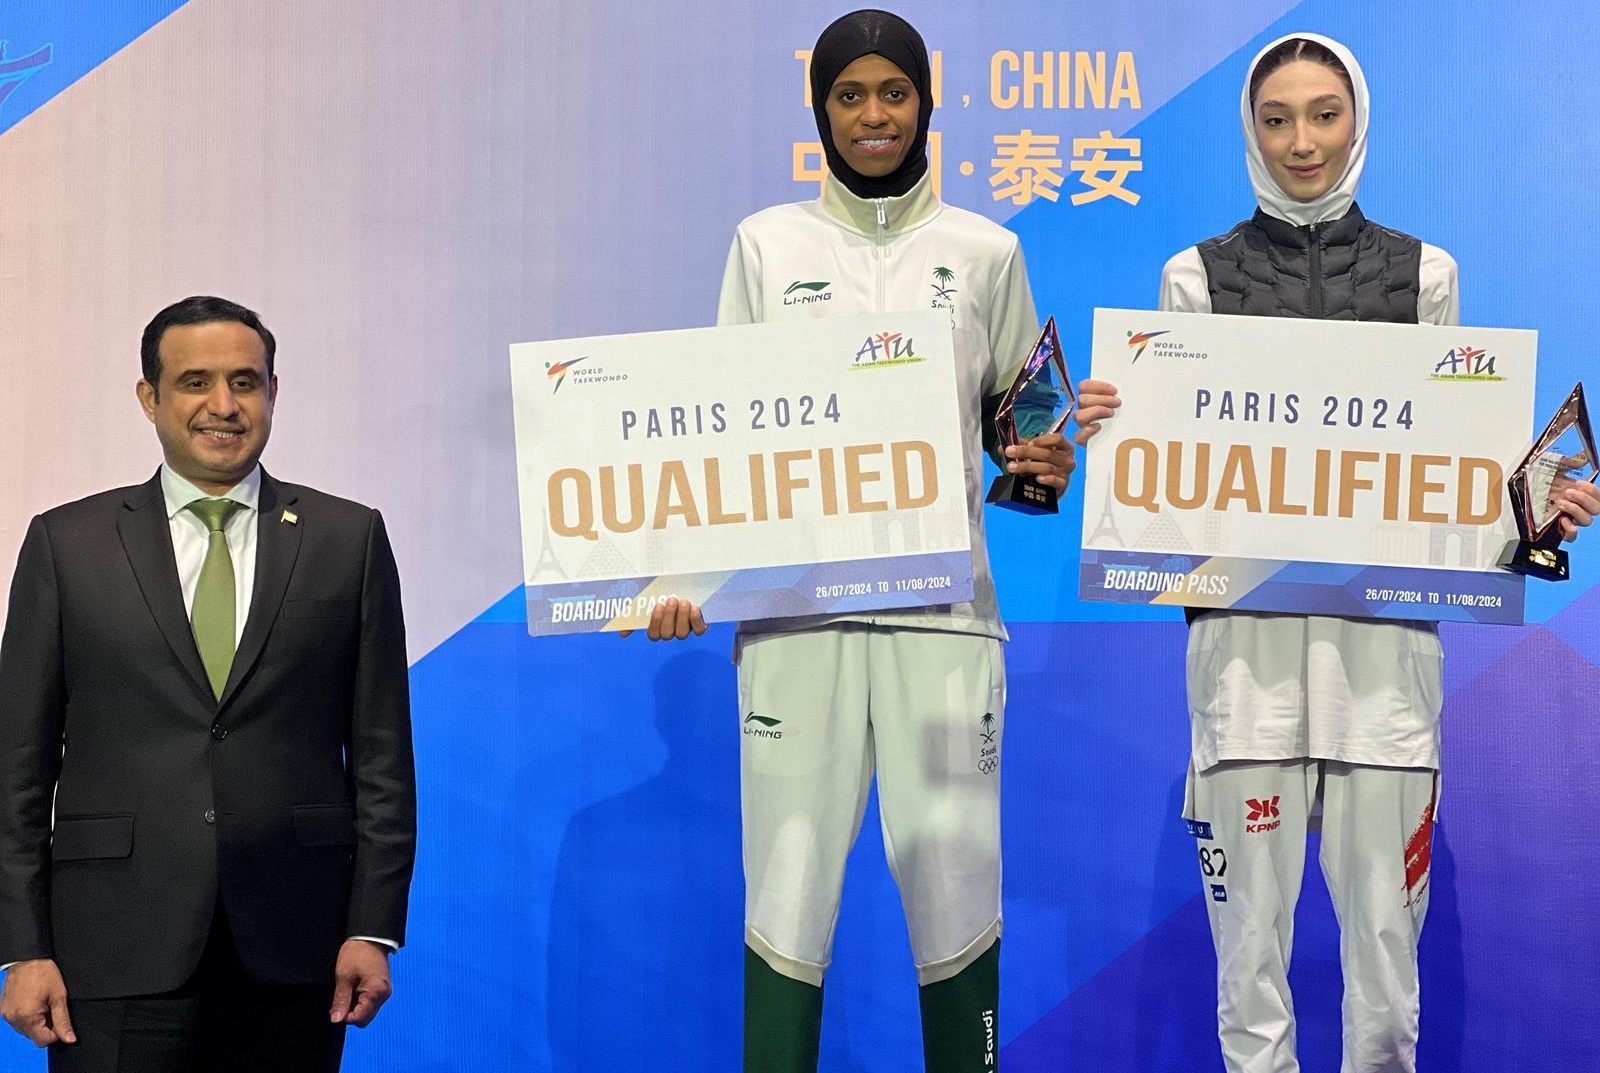 دنيا أبوطالب (وسط الصورة) تحتفل بالتأهل لأولمبياد باريس 2024 